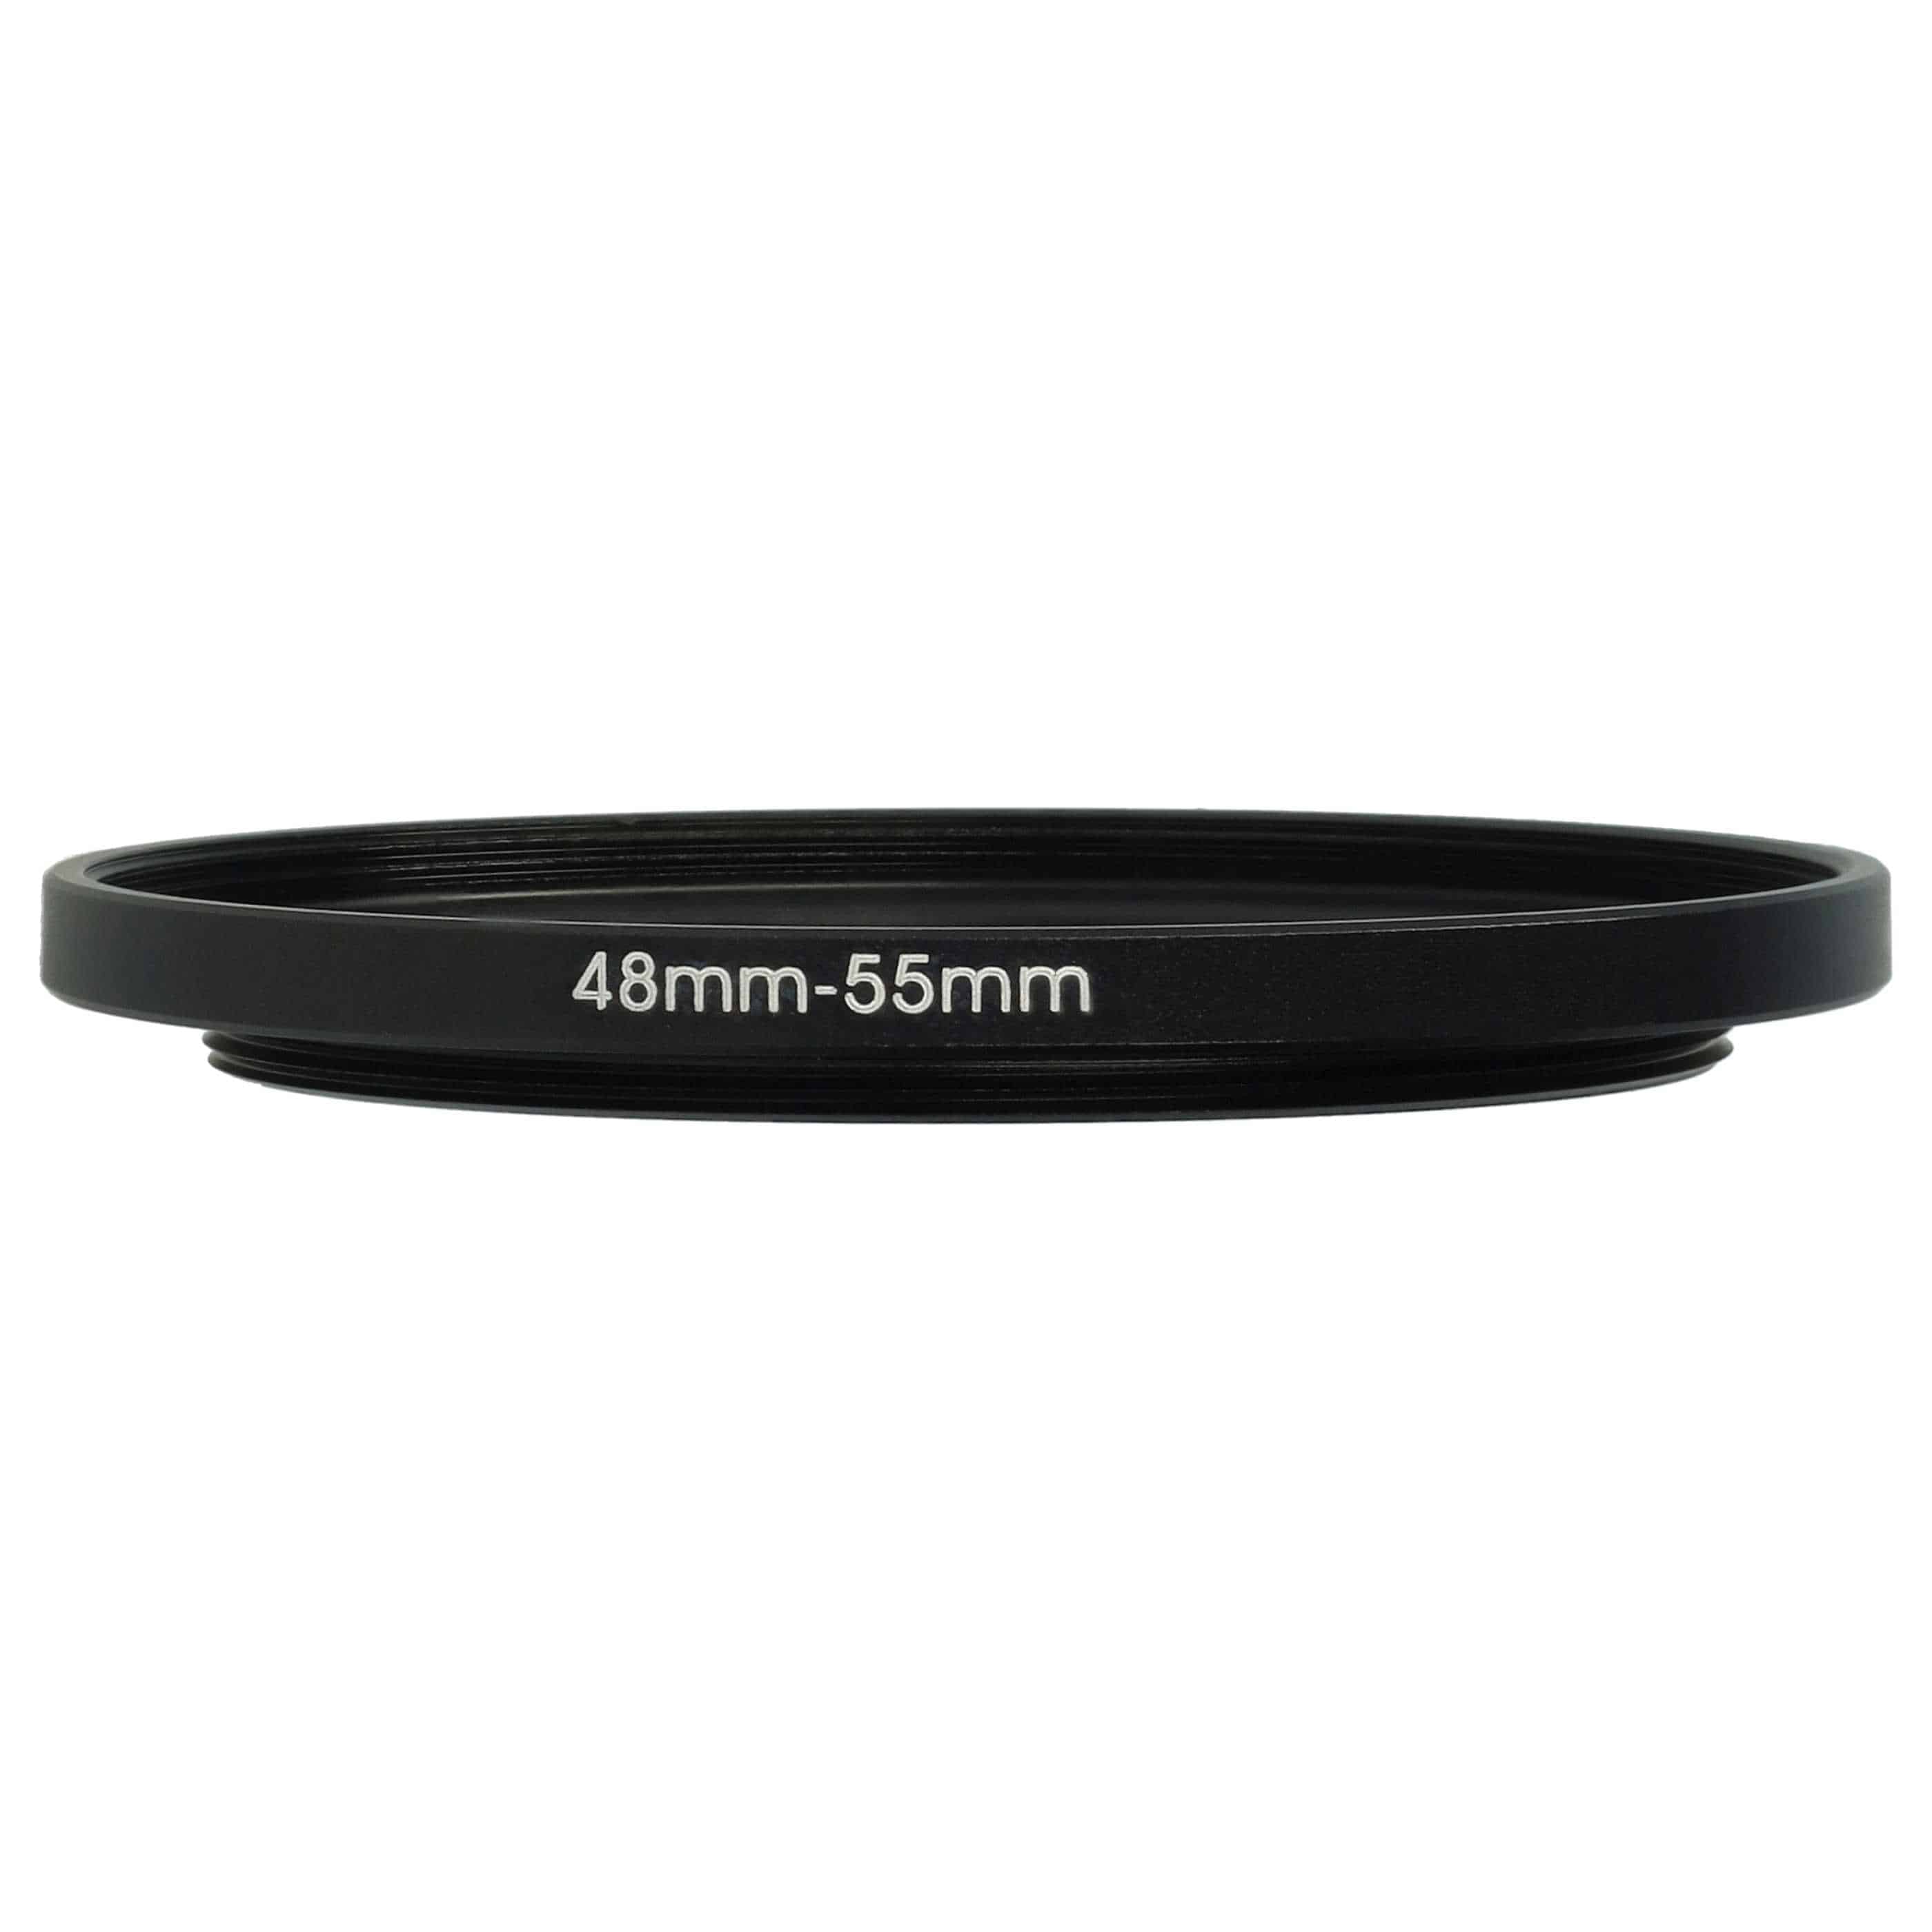 Bague Step-up 48 mm vers 55 mm pour divers objectifs d'appareil photo - Adaptateur filtre